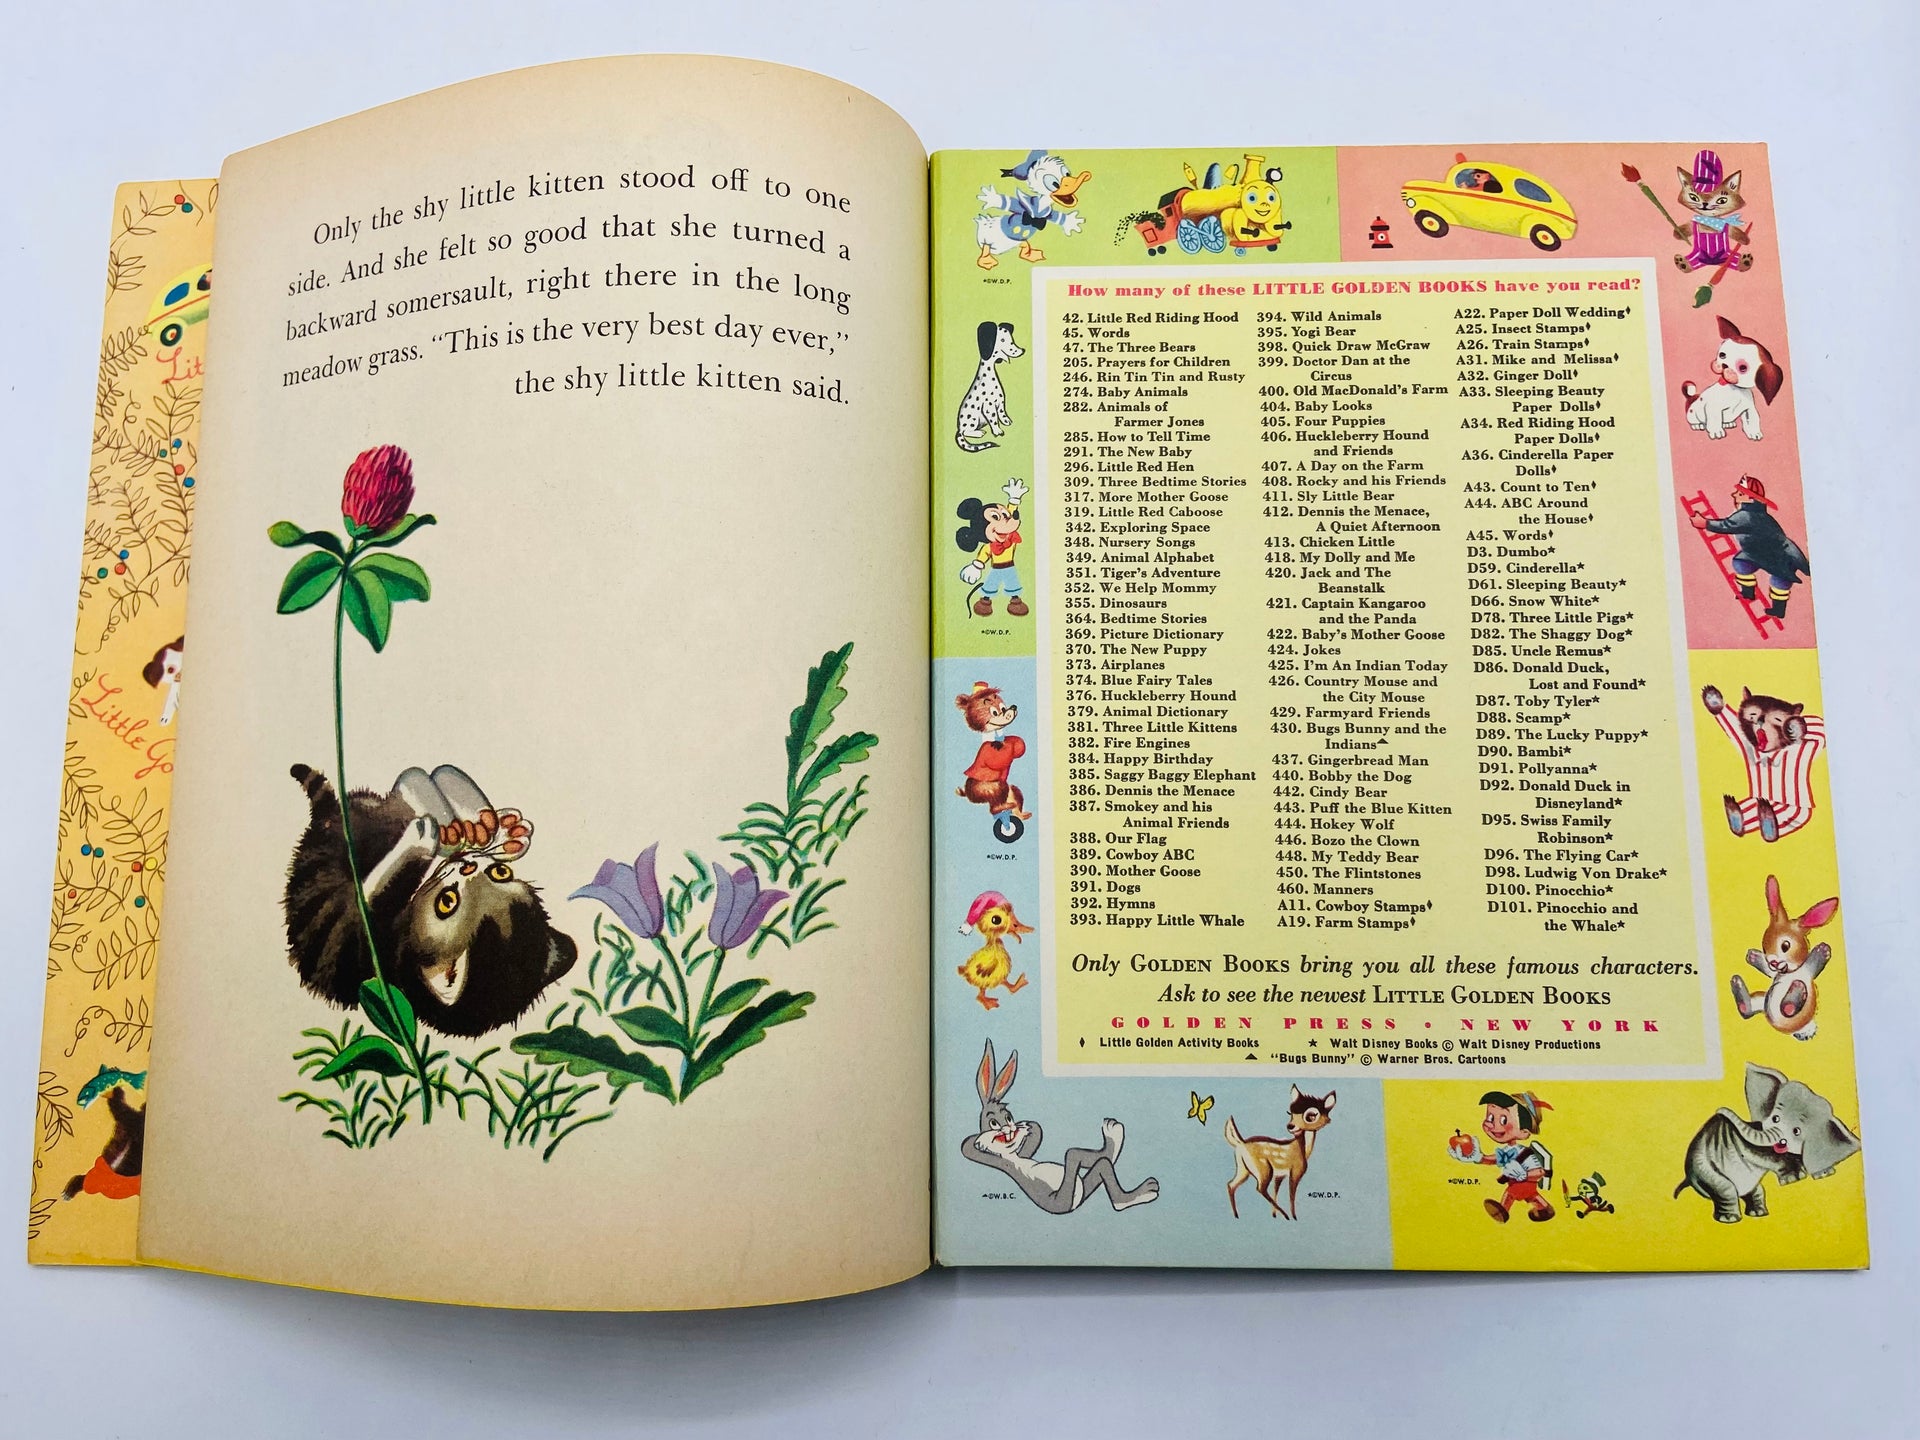 The Shy Little Kitten Little Golden Book